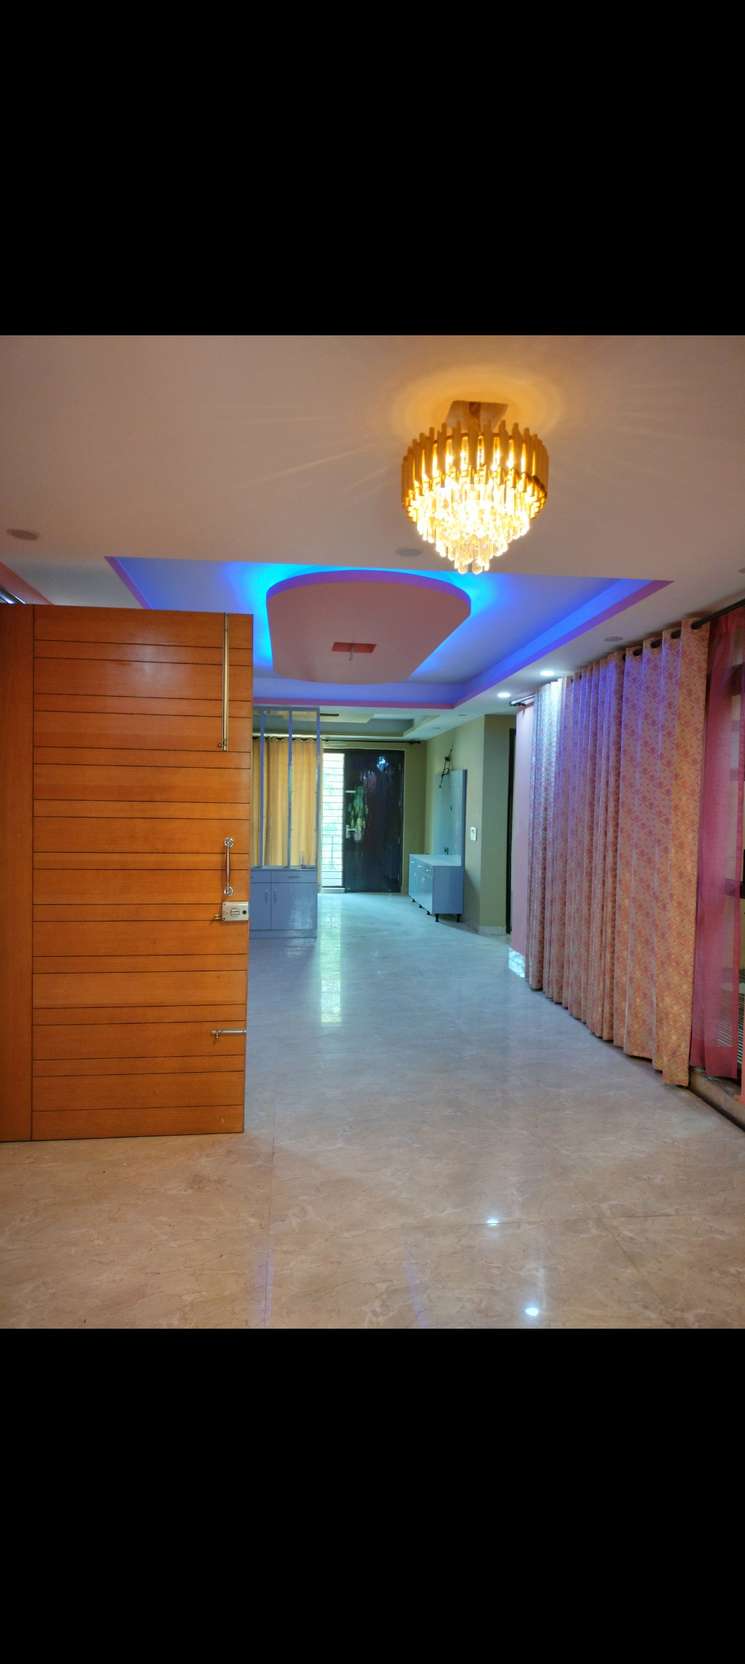 3 Bedroom 2250 Sq.Ft. Builder Floor in Sector 4 Gurgaon